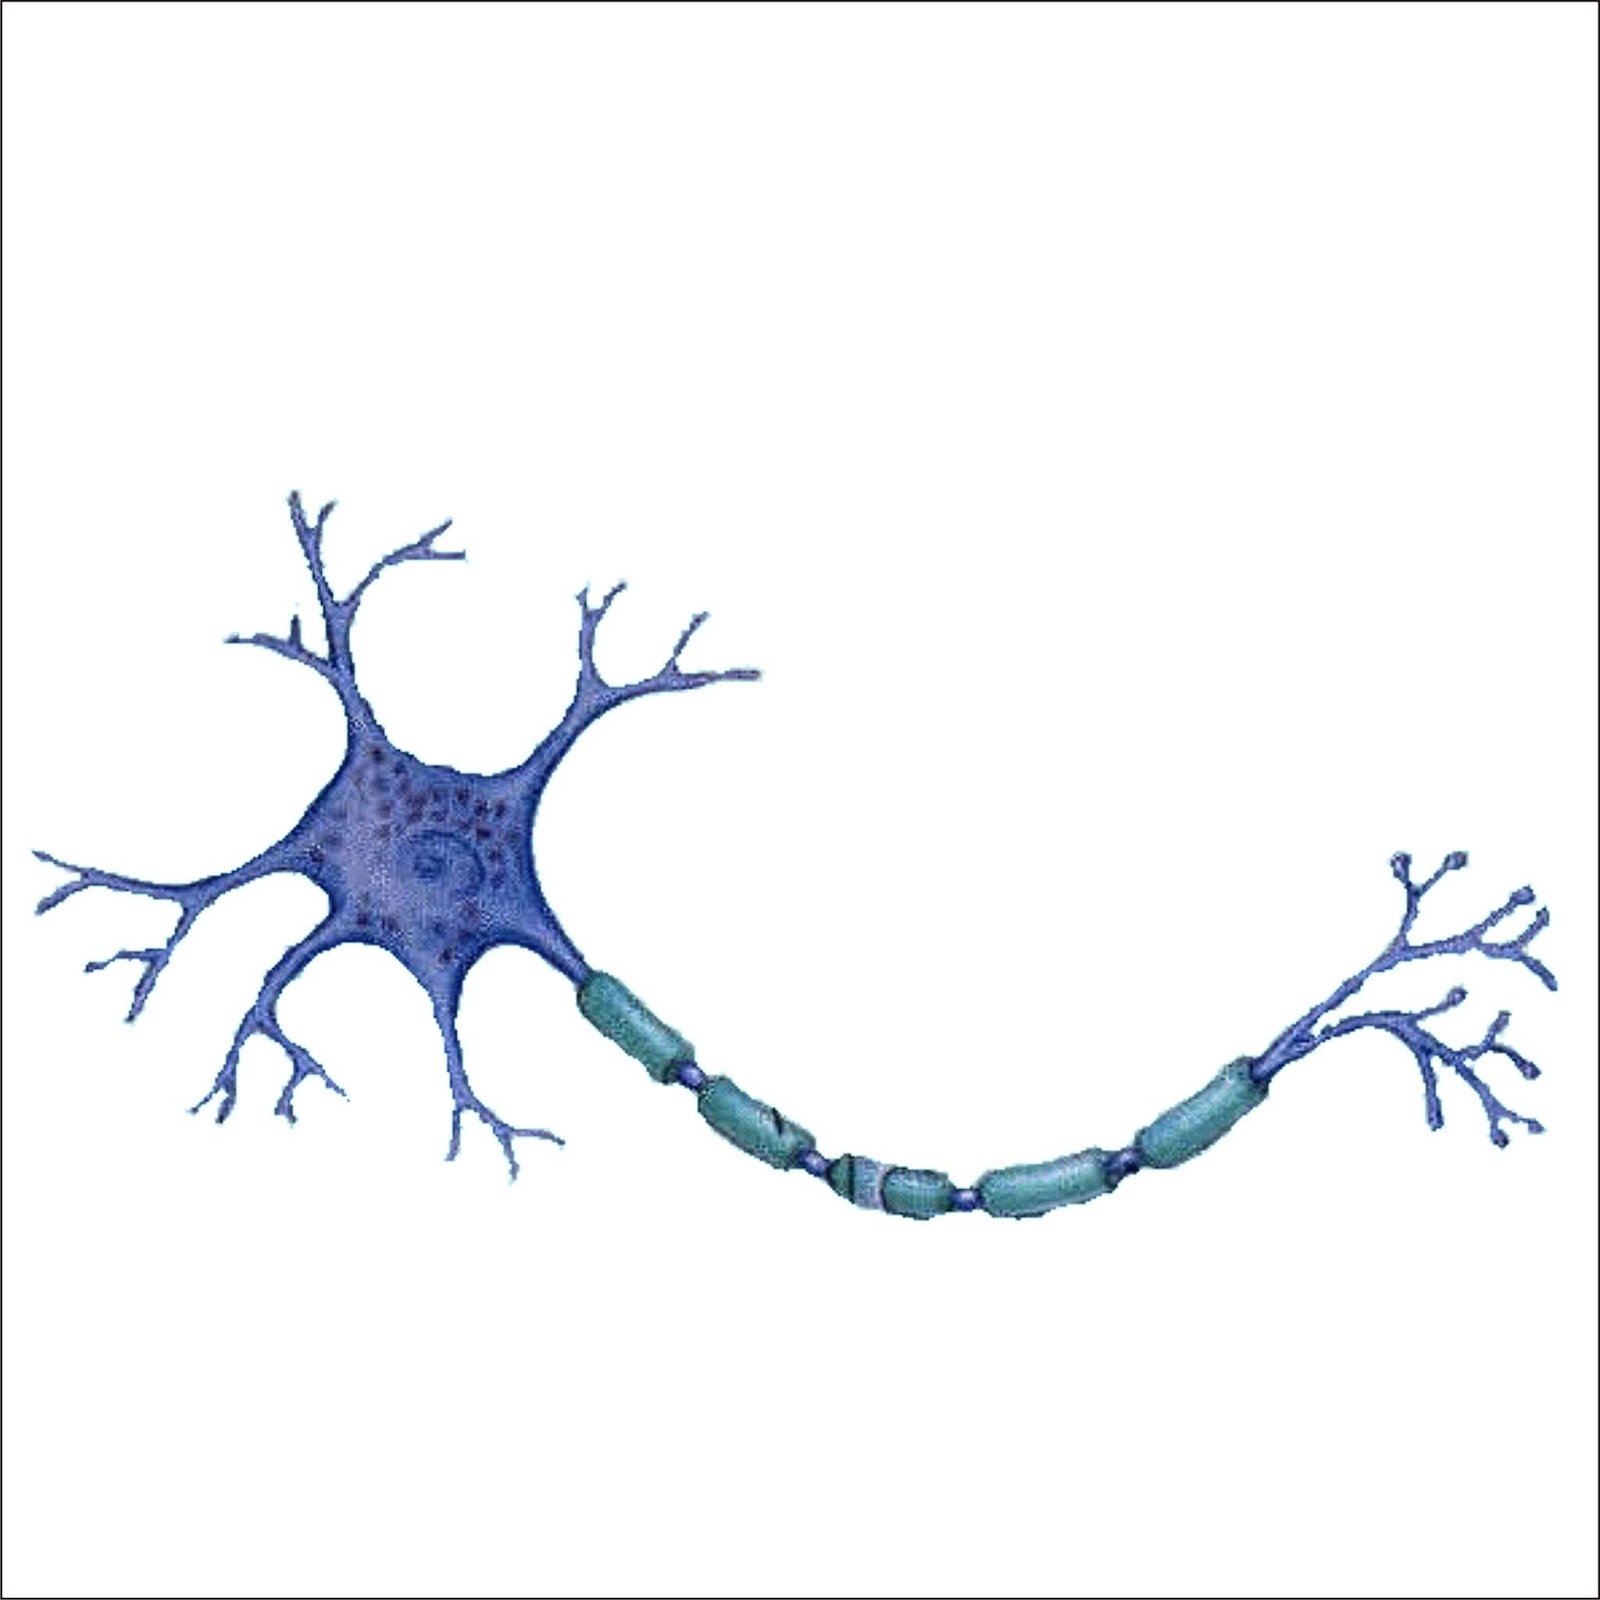 Биология нервные клетки. Строение нейрона дендриты Аксон. Строение нервной клетки нейрона. Аксон нервной клетки строение. Схема строение нейрона дендриты Аксон.